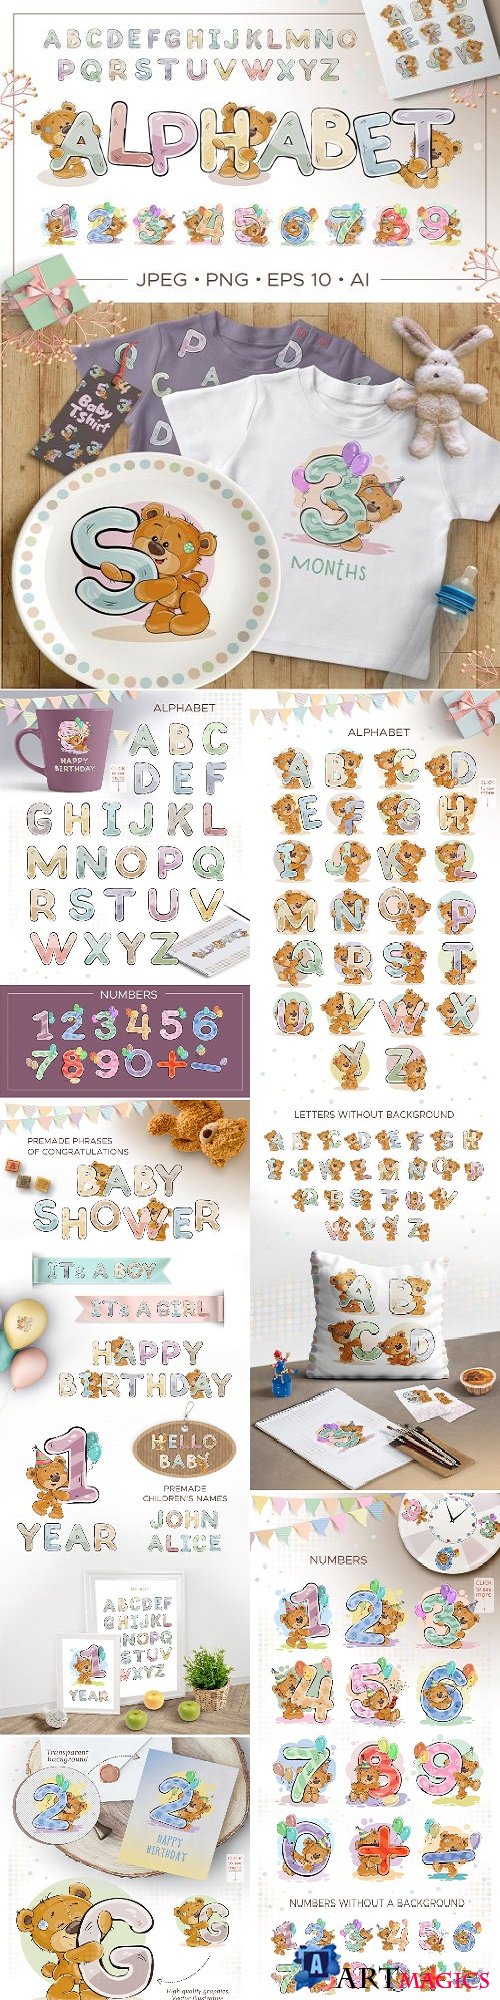 Kid's alphabet with cartoon bear - 2100596